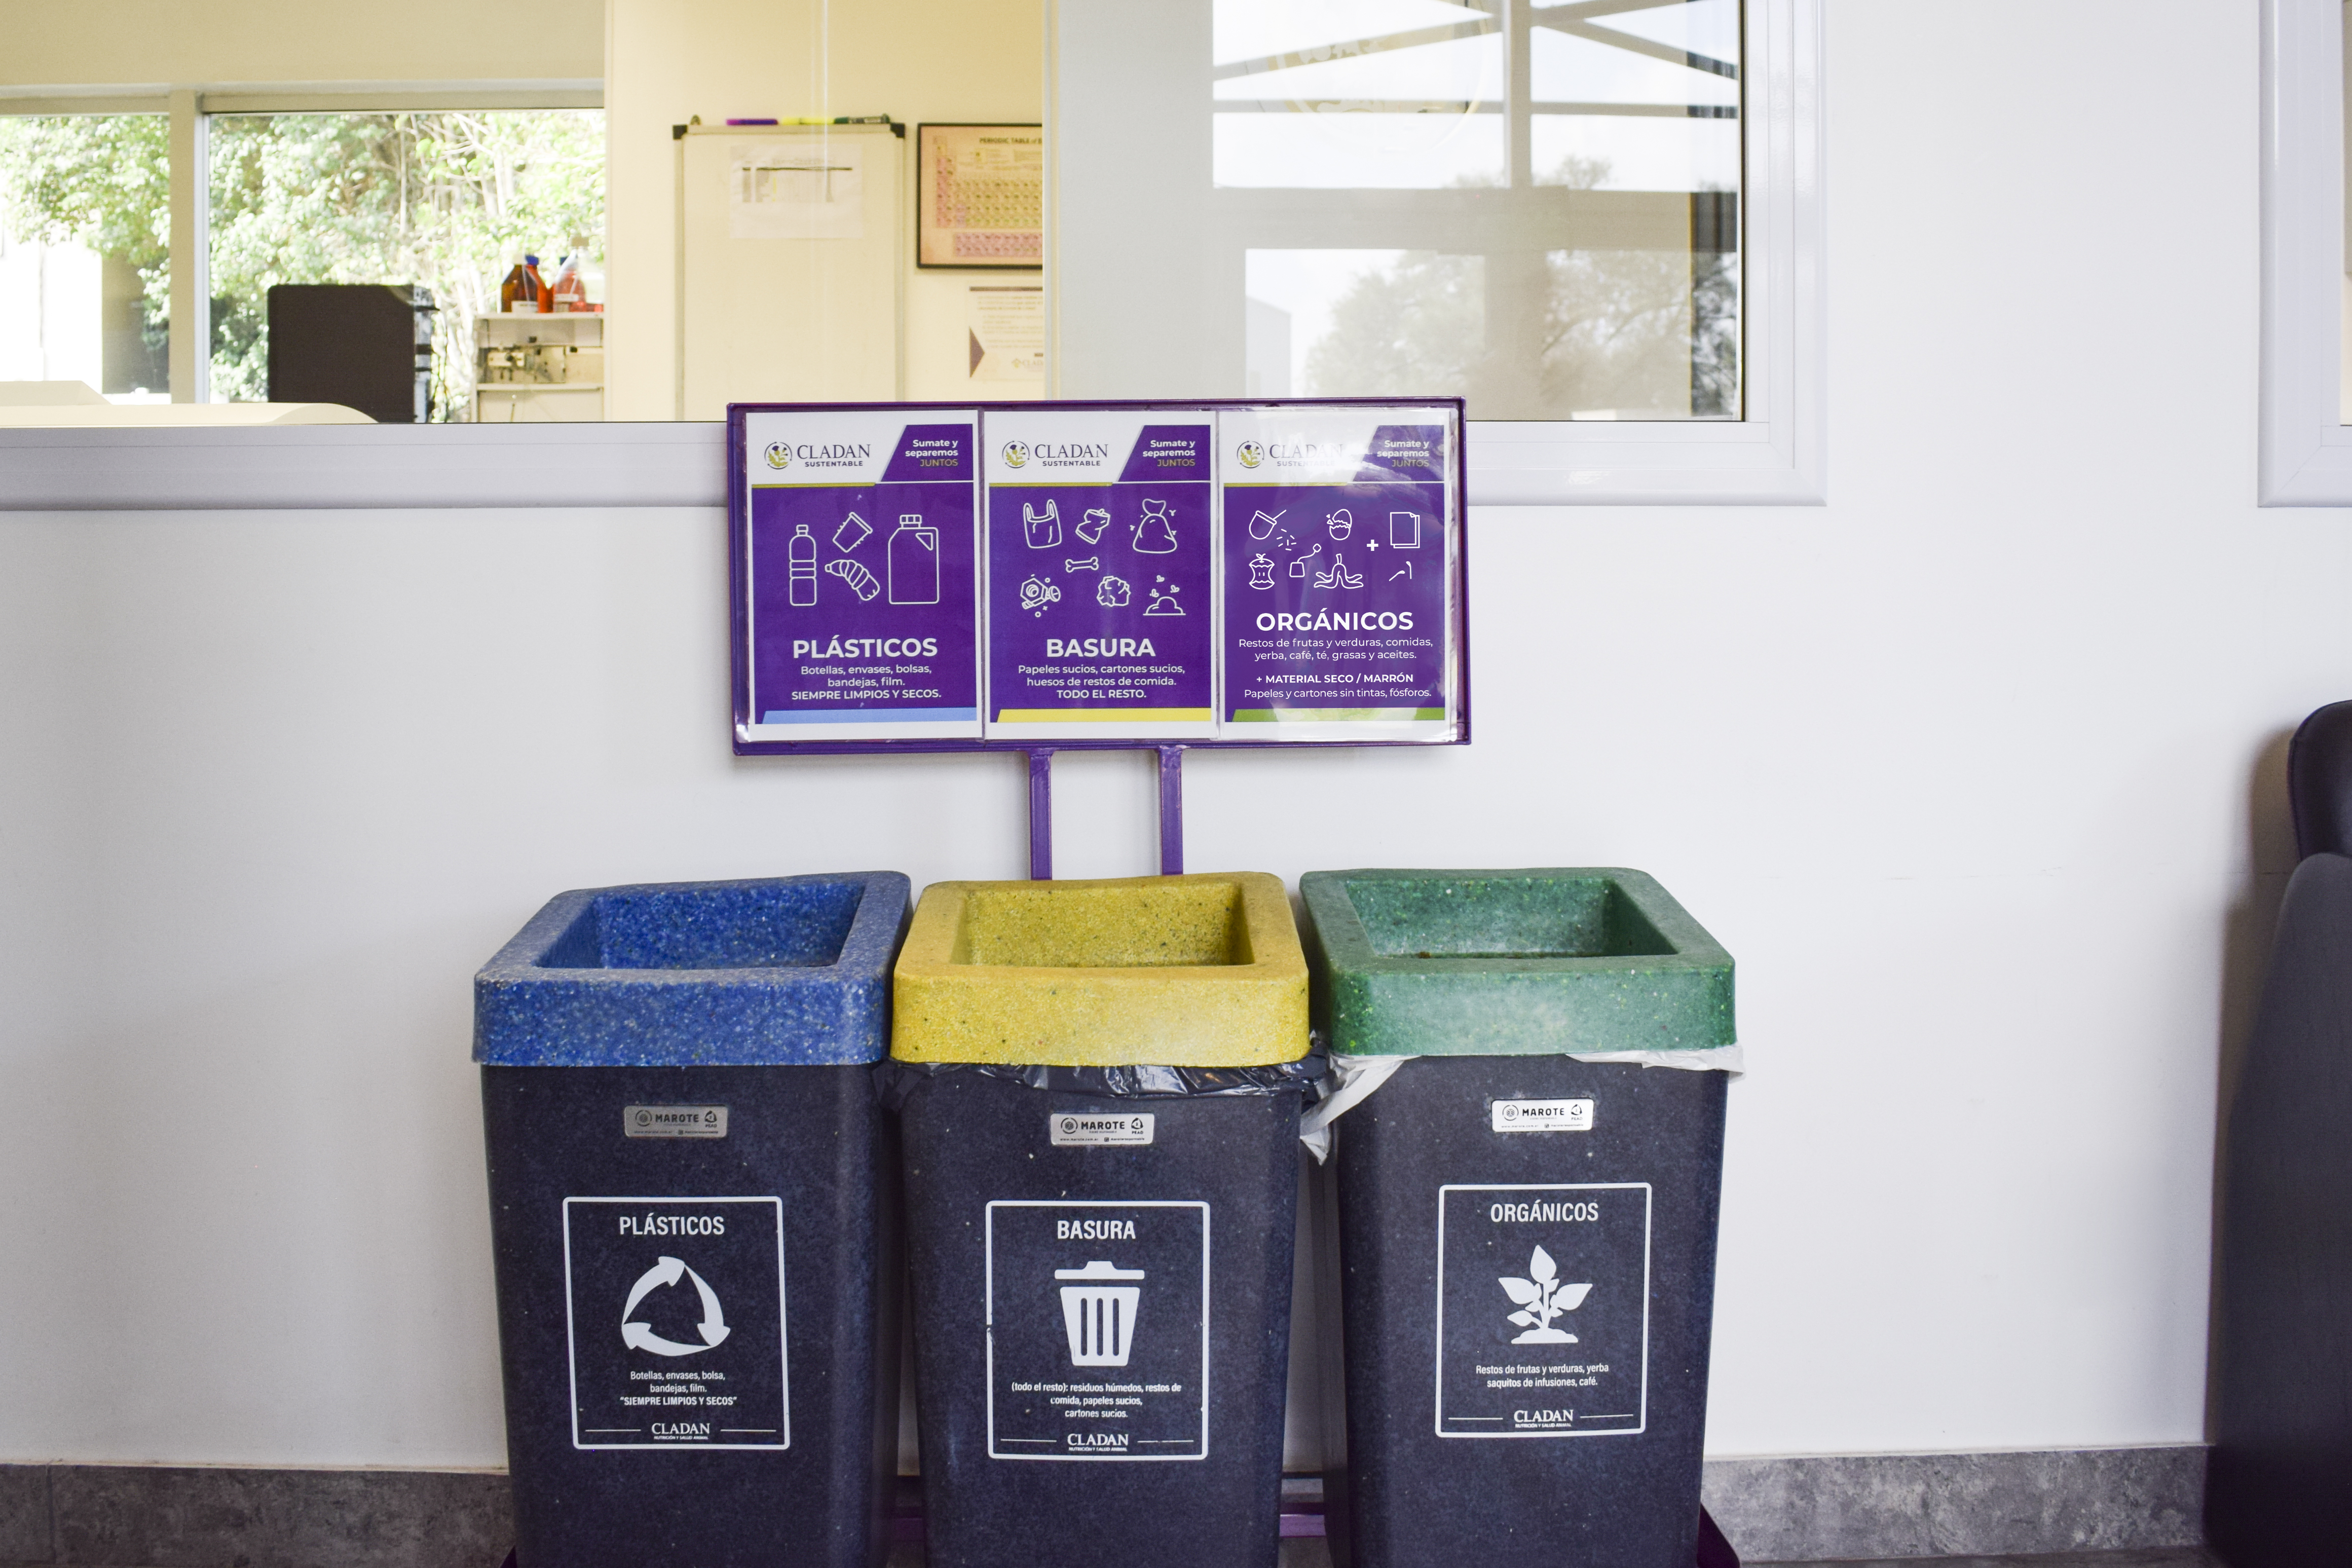 Tachos de reciclado de materiales plásticos, orgánicos y basura